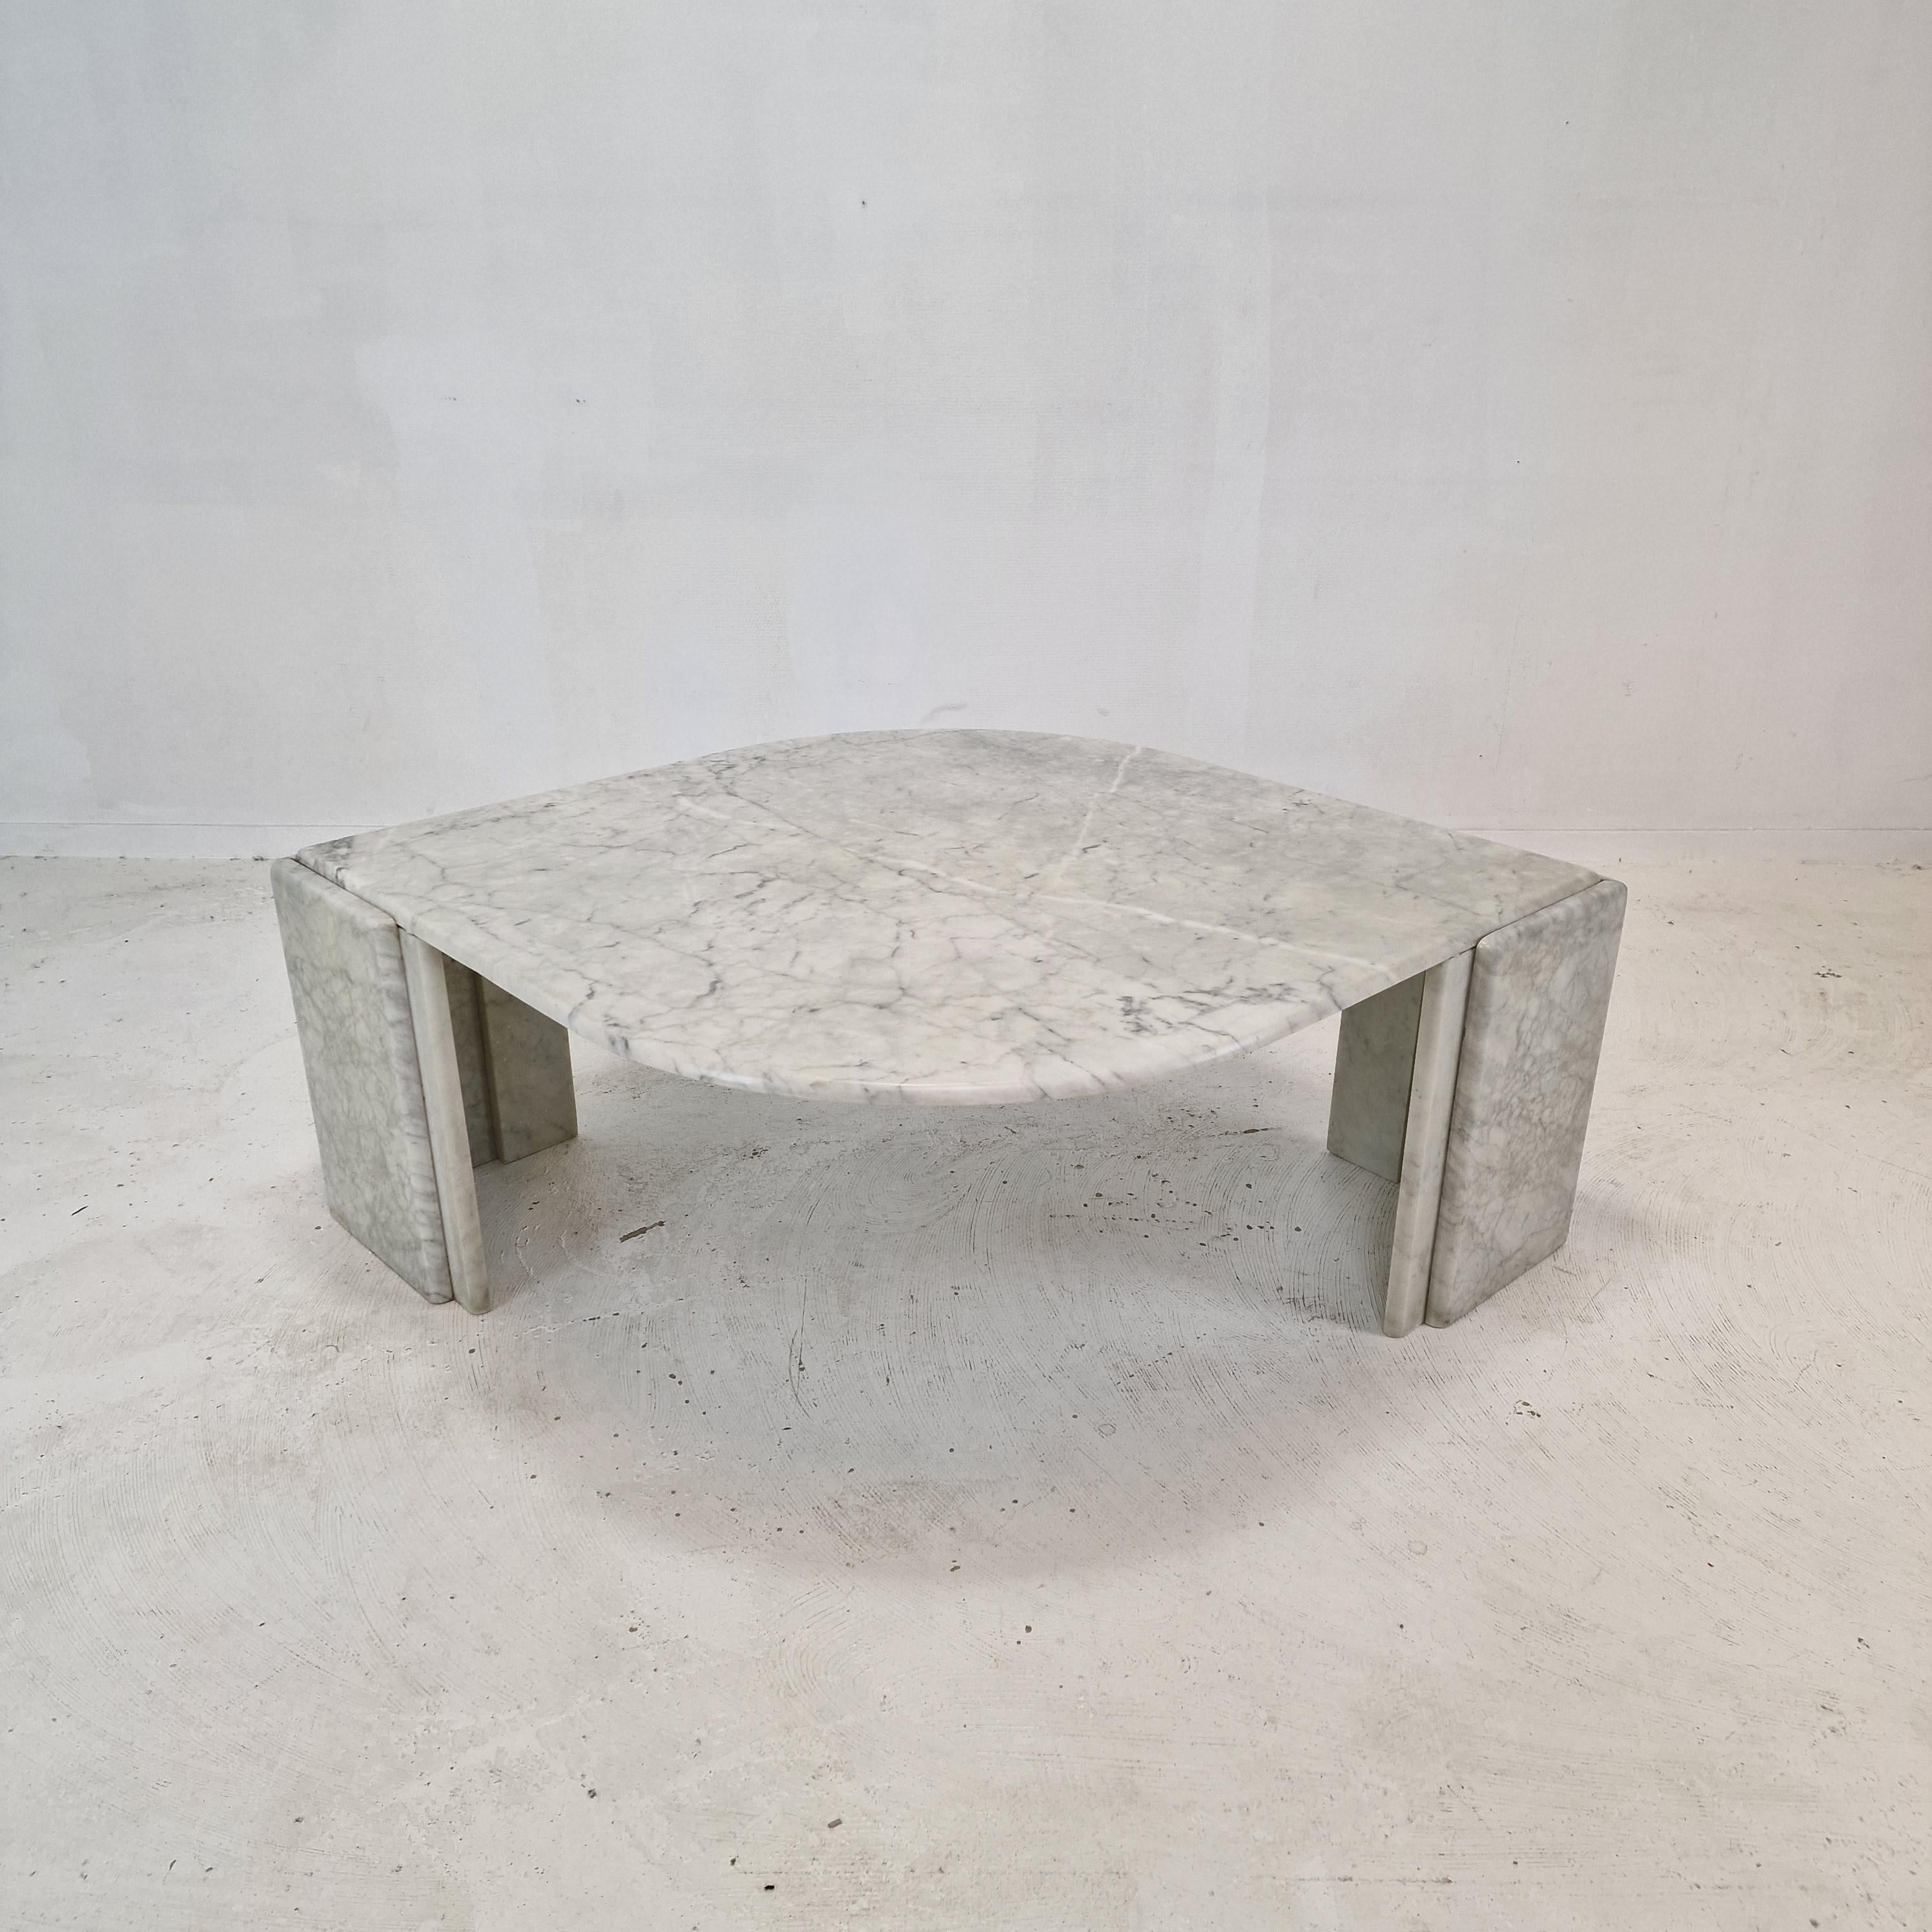 Remarquable table basse italienne en marbre, fabriquée à la main, années 1980.

La partie supérieure en forme de goutte d'eau et les deux pieds sont en très beau marbre.
Le marbre fabuleux présente un très beau motif.

Il présente les traces